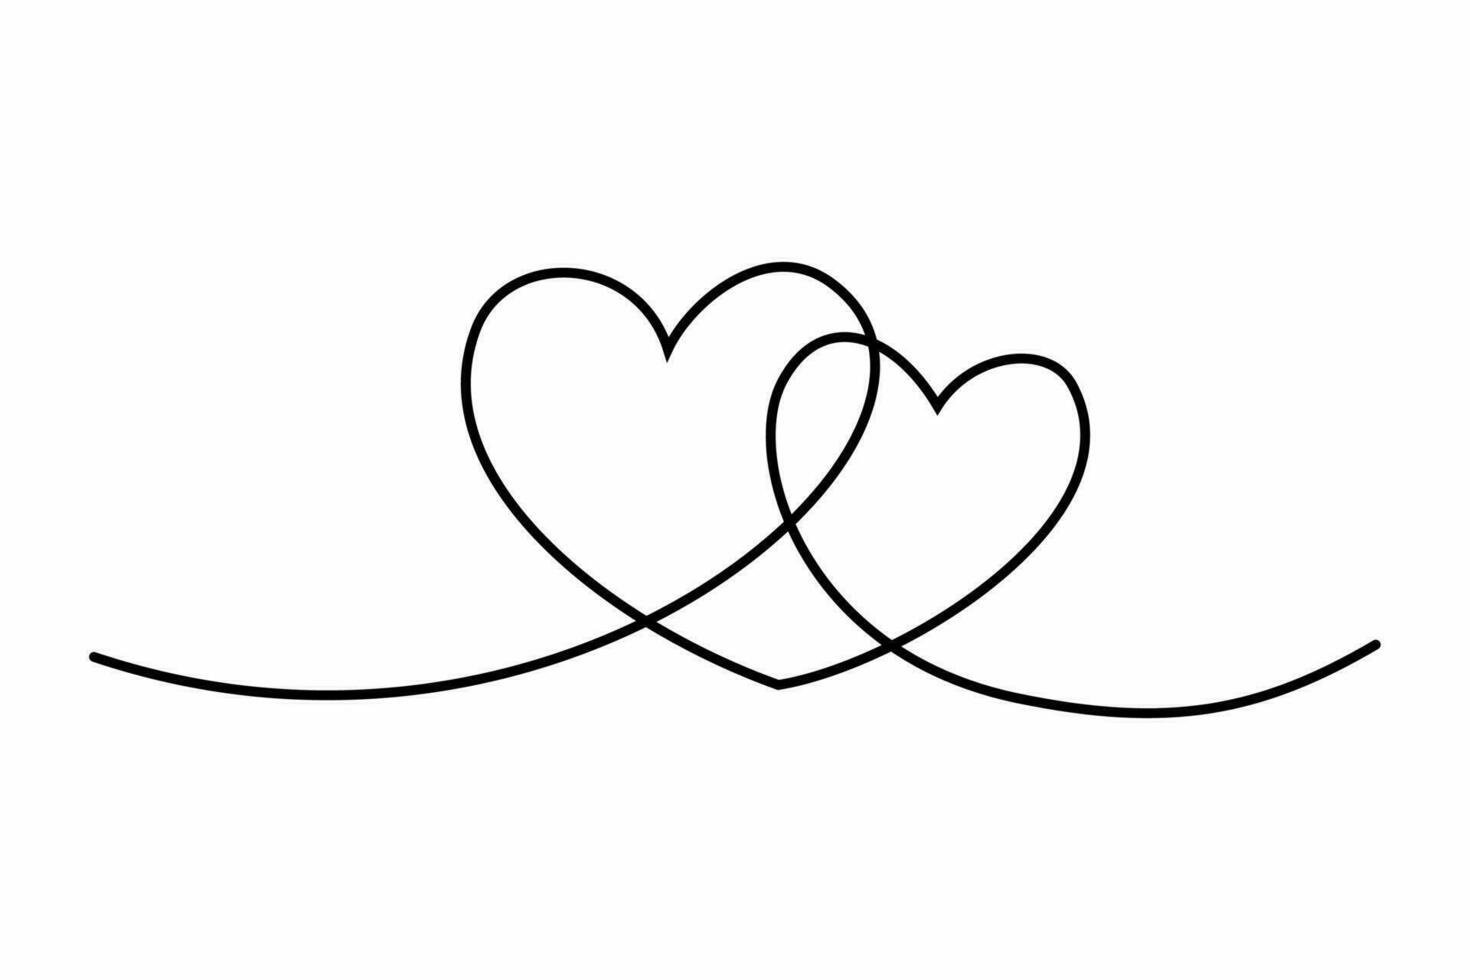 cuore continuo uno linea disegno, Doppio cuore mano disegnato, nero e bianca vettore minimalista illustrazione di amore concetto fatto di uno linea.